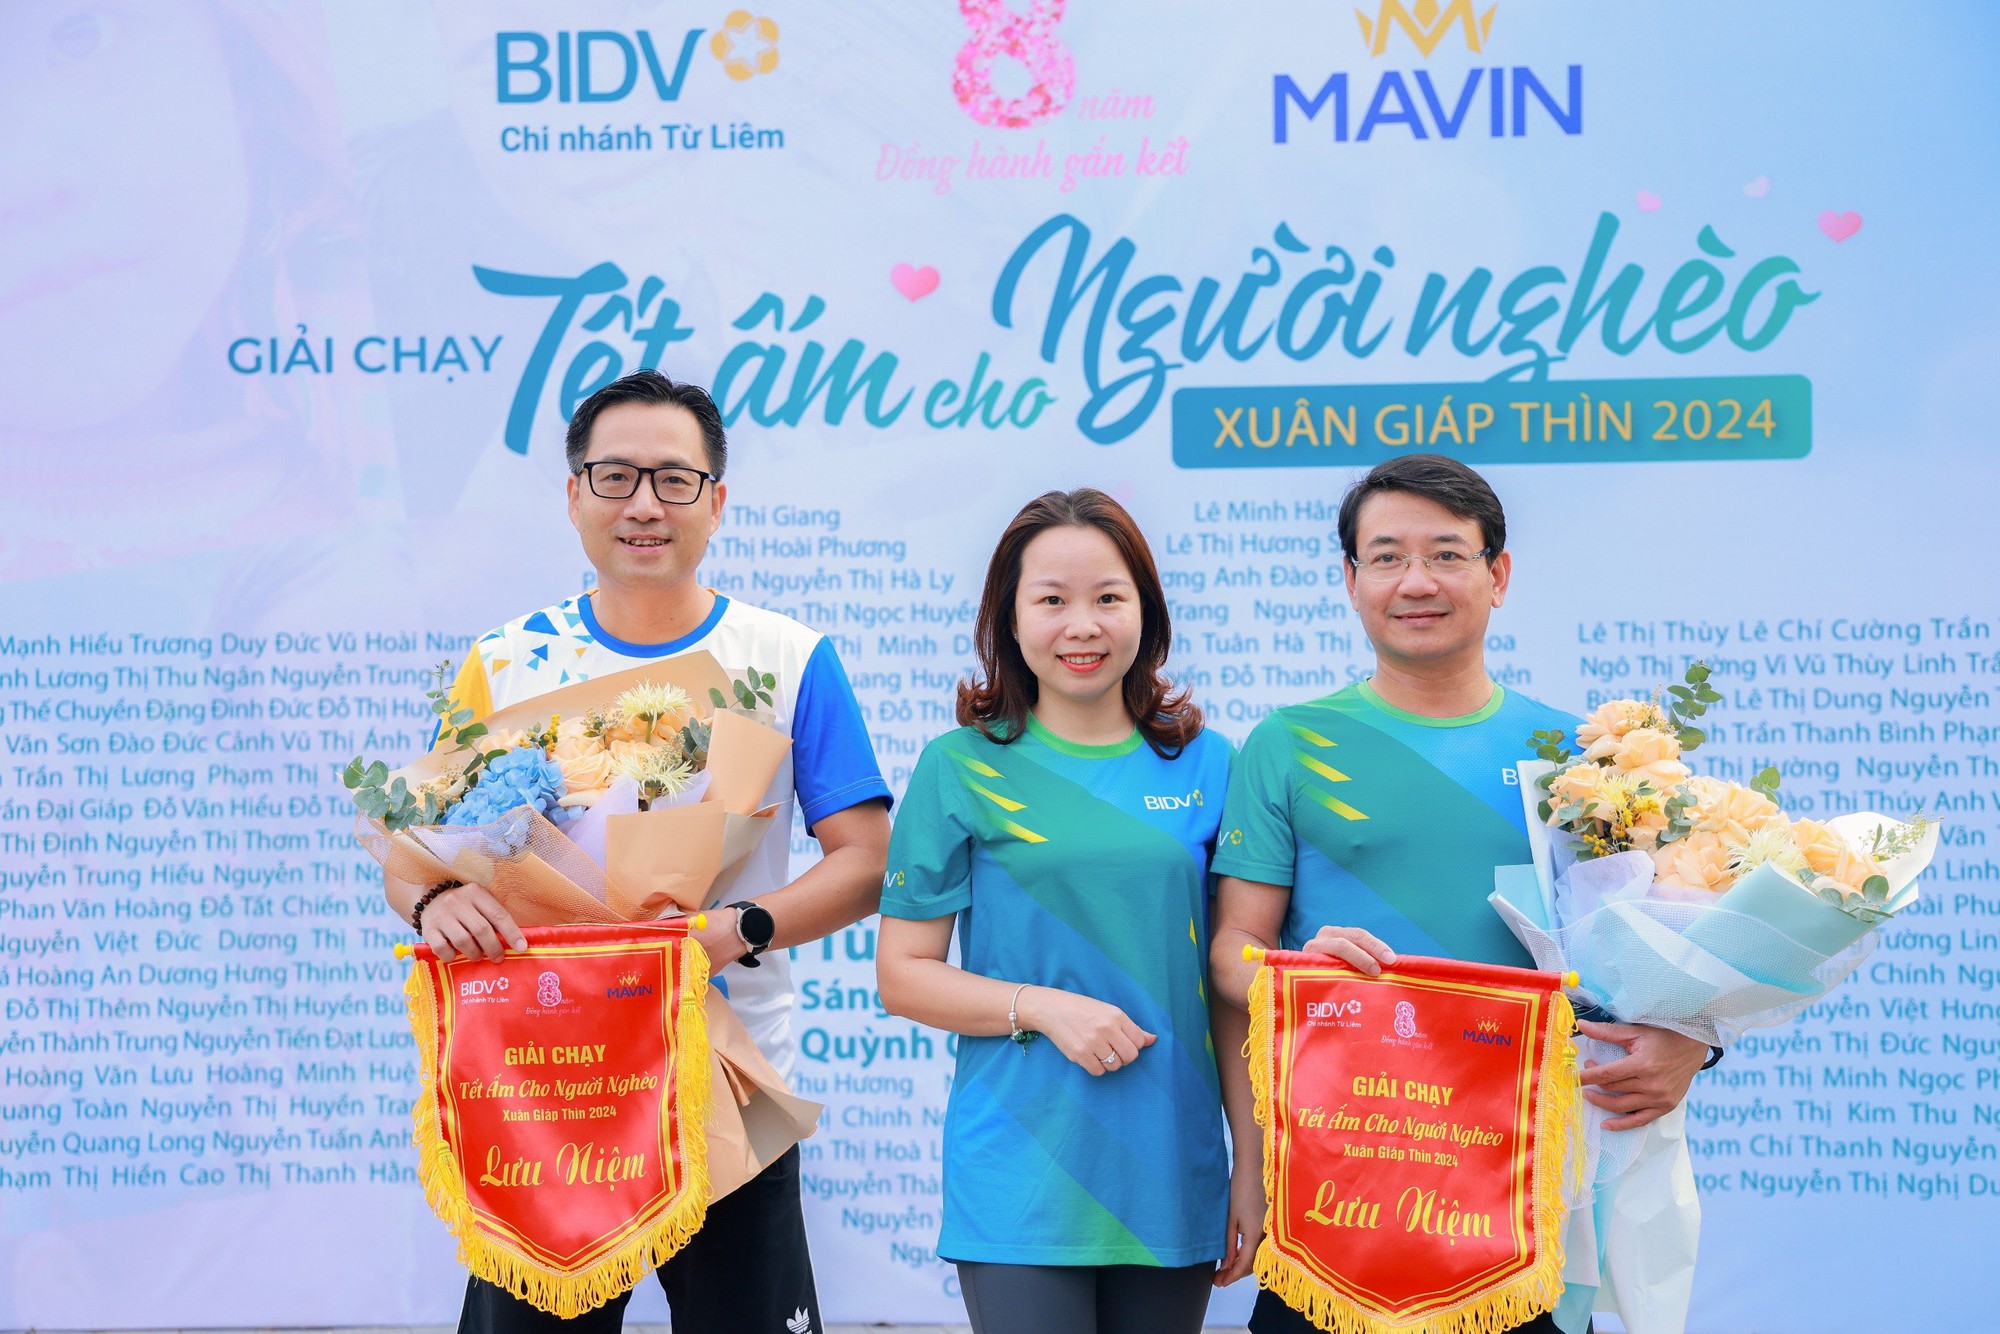 Mavin đồng hành cùng BIDV mang Tết ấm cho người nghèo - Ảnh 2.